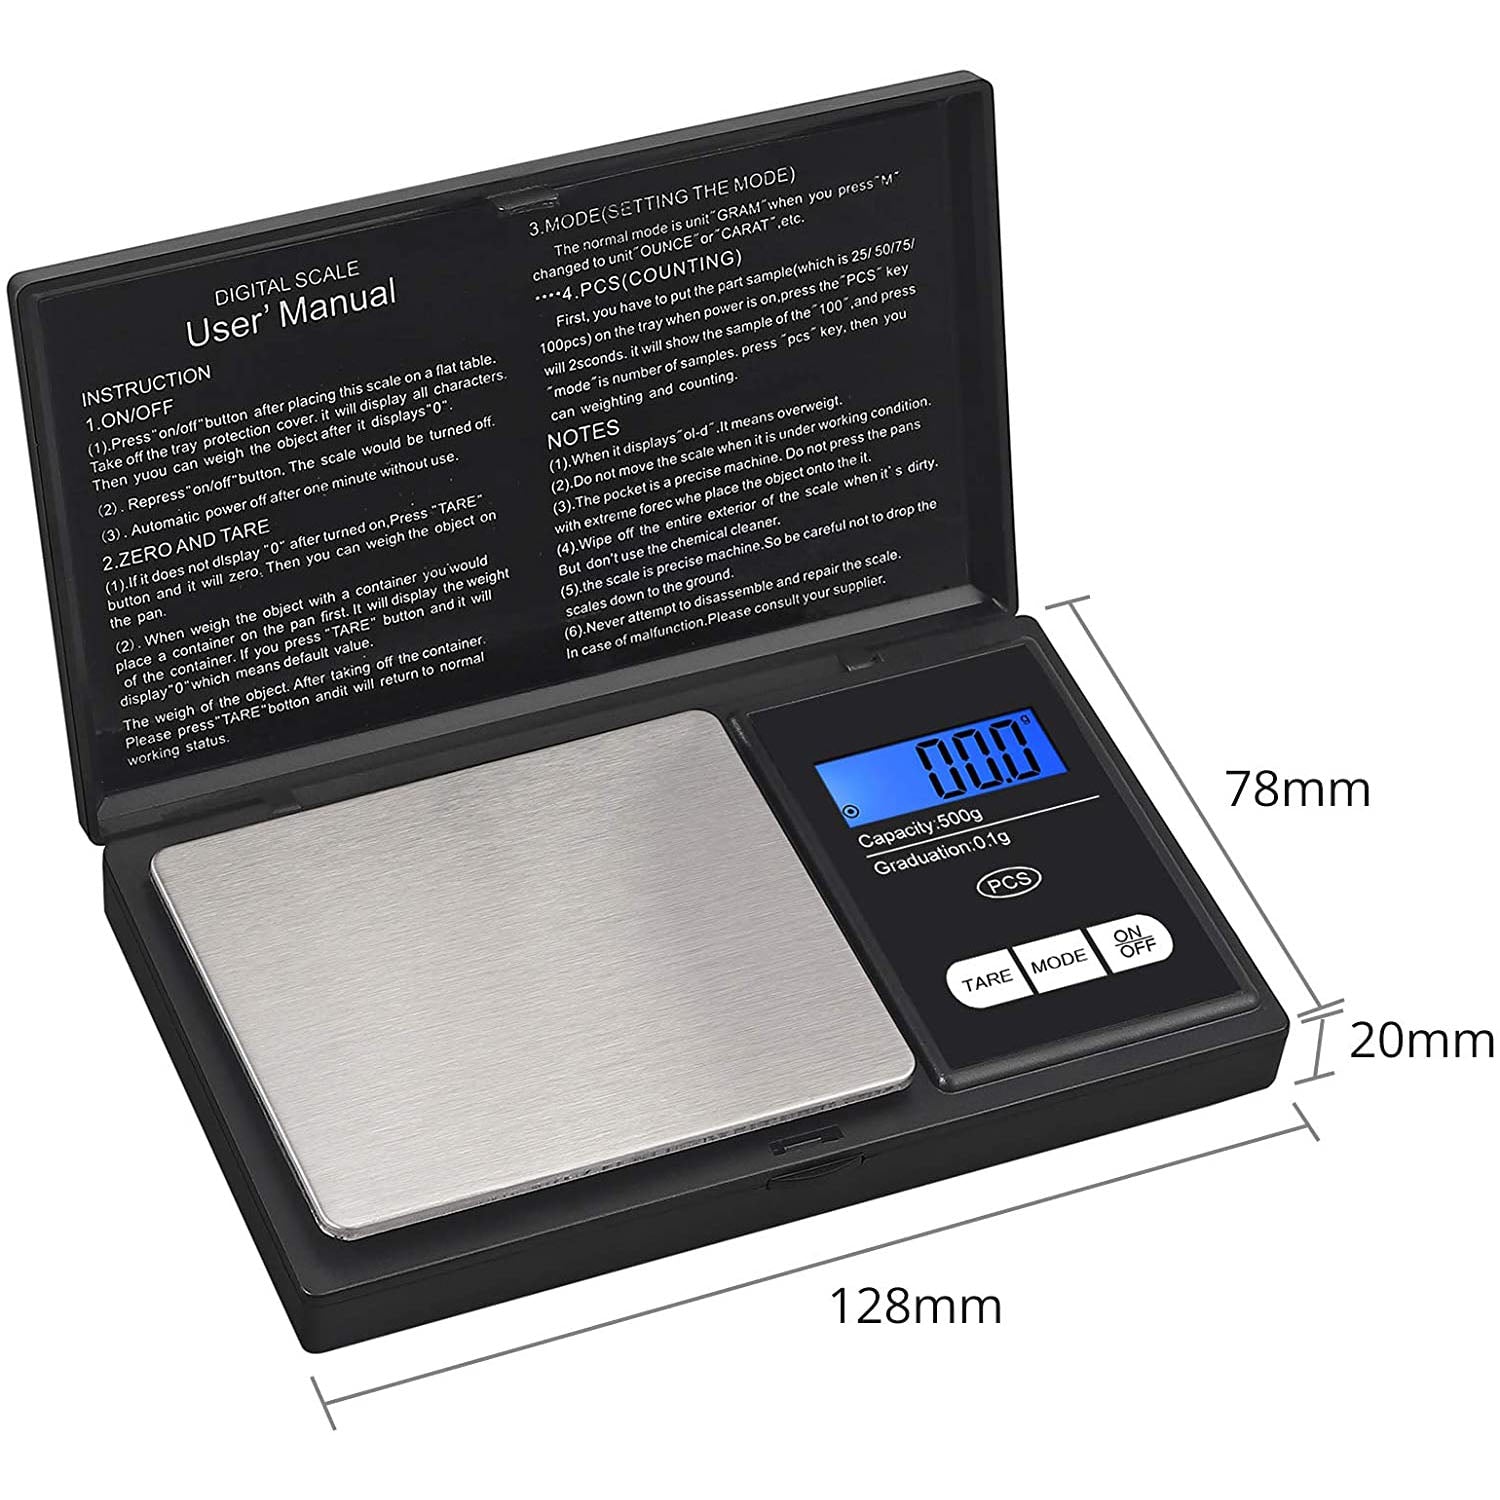 Kamtop Digital Weighing Scale 0.1g--500g